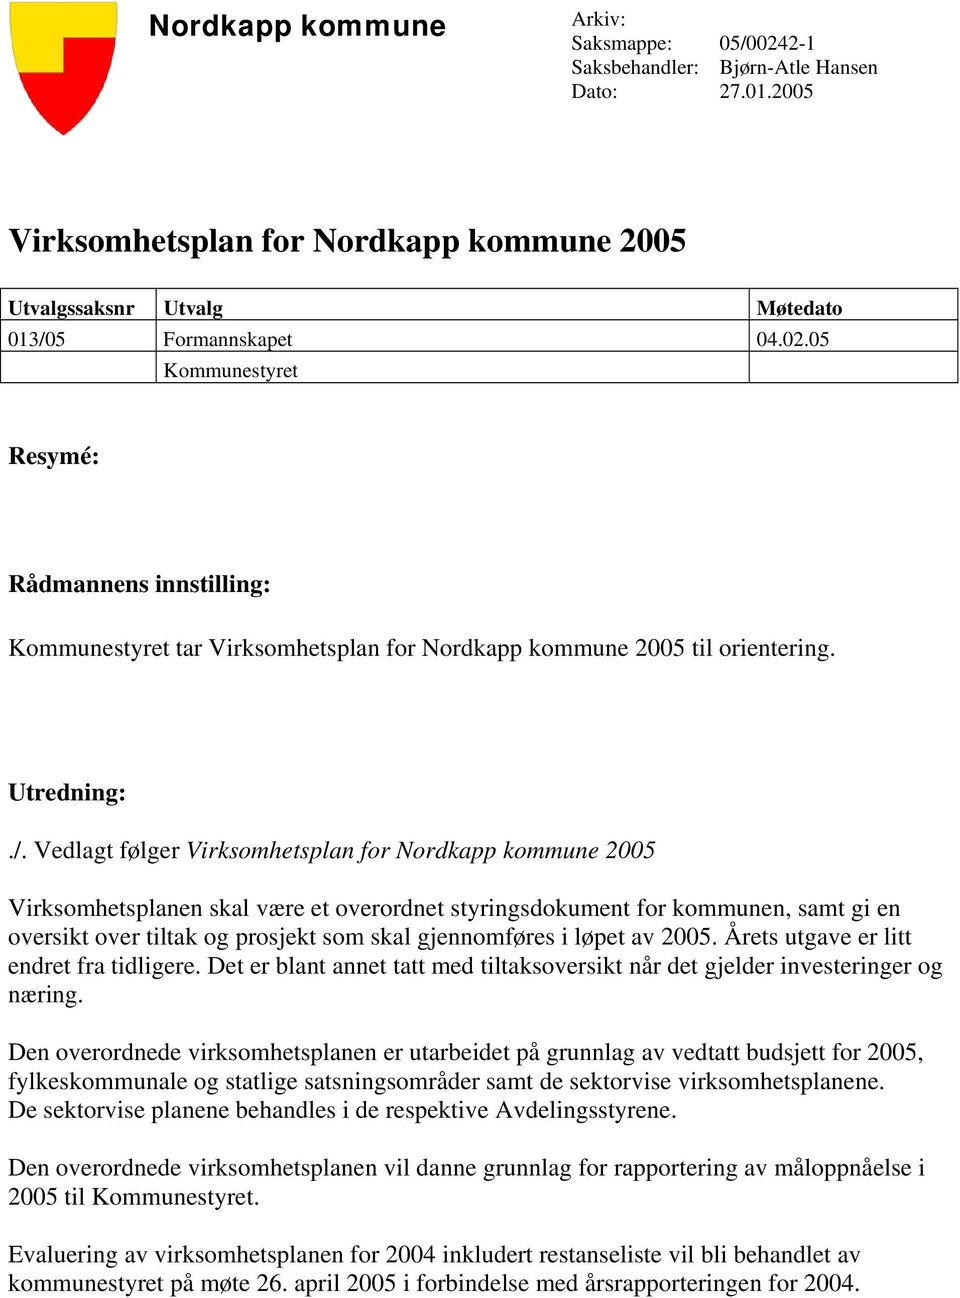 Vedlagt følger Virksomhetsplan for Nordkapp kommune 2005 Virksomhetsplanen skal være et overordnet styringsdokument for kommunen, samt gi en oversikt over tiltak og prosjekt som skal gjennomføres i